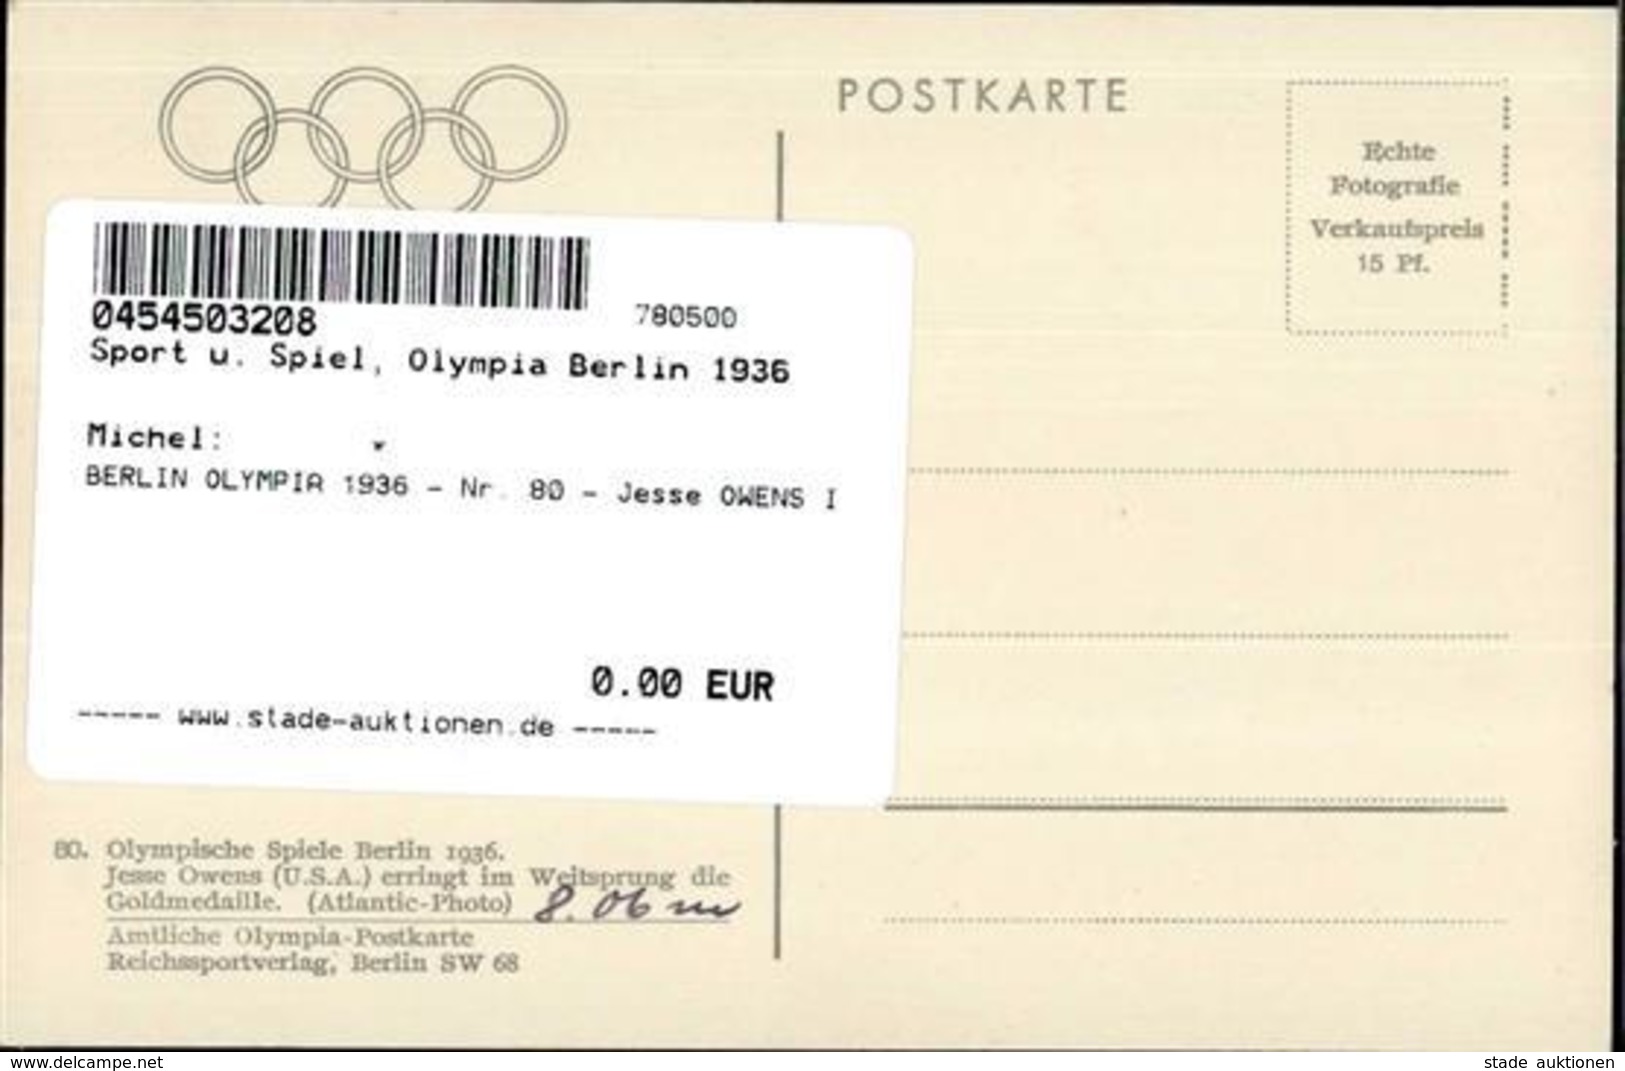 BERLIN OLYMPIA 1936 - Nr. 80 - Jesse OWENS I - Olympische Spiele